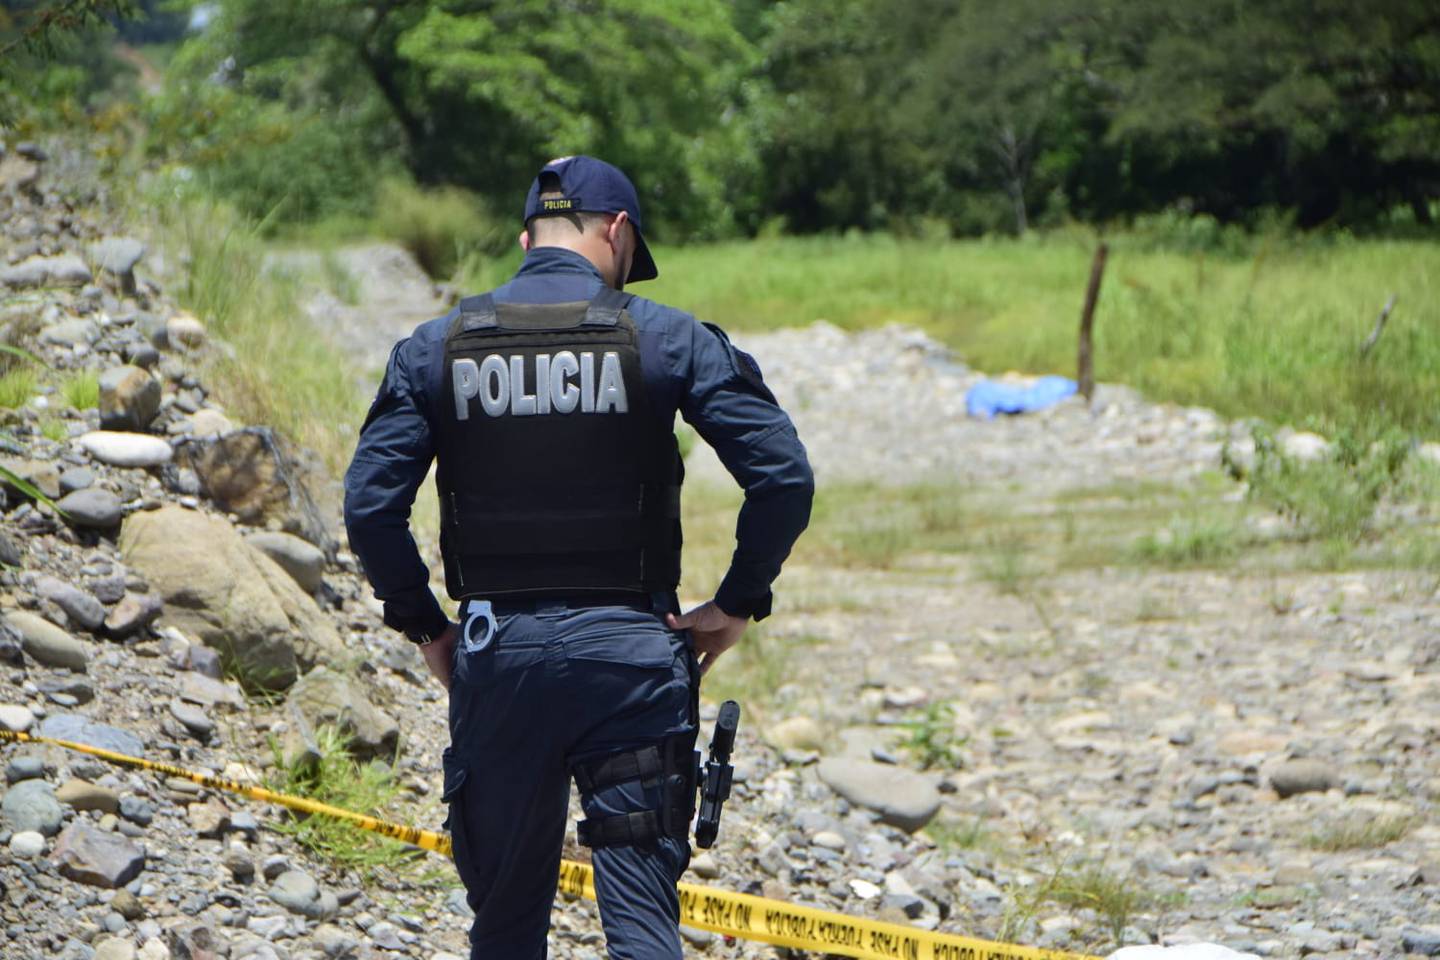 Doble homicidio Puntarenas de cuerpos calcinados. Foto: Andrés Carita